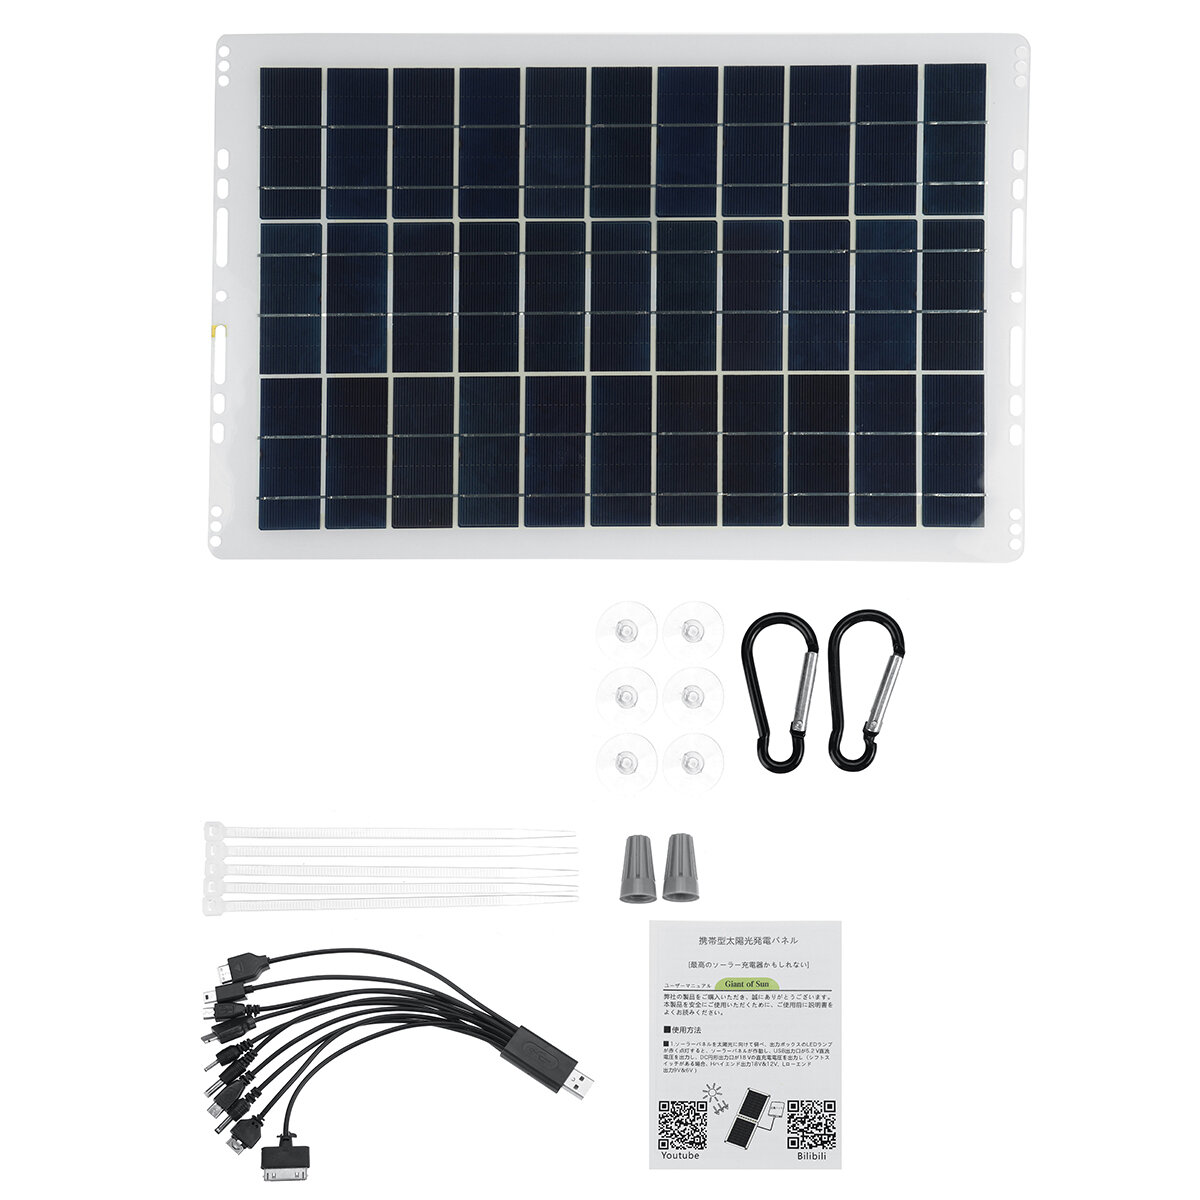 Kit de painel solar portátil 10A/30A / 60A / 100A USB Bateria Carregador para acampamento ao ar livre, viagem, caravana, barco, furgão